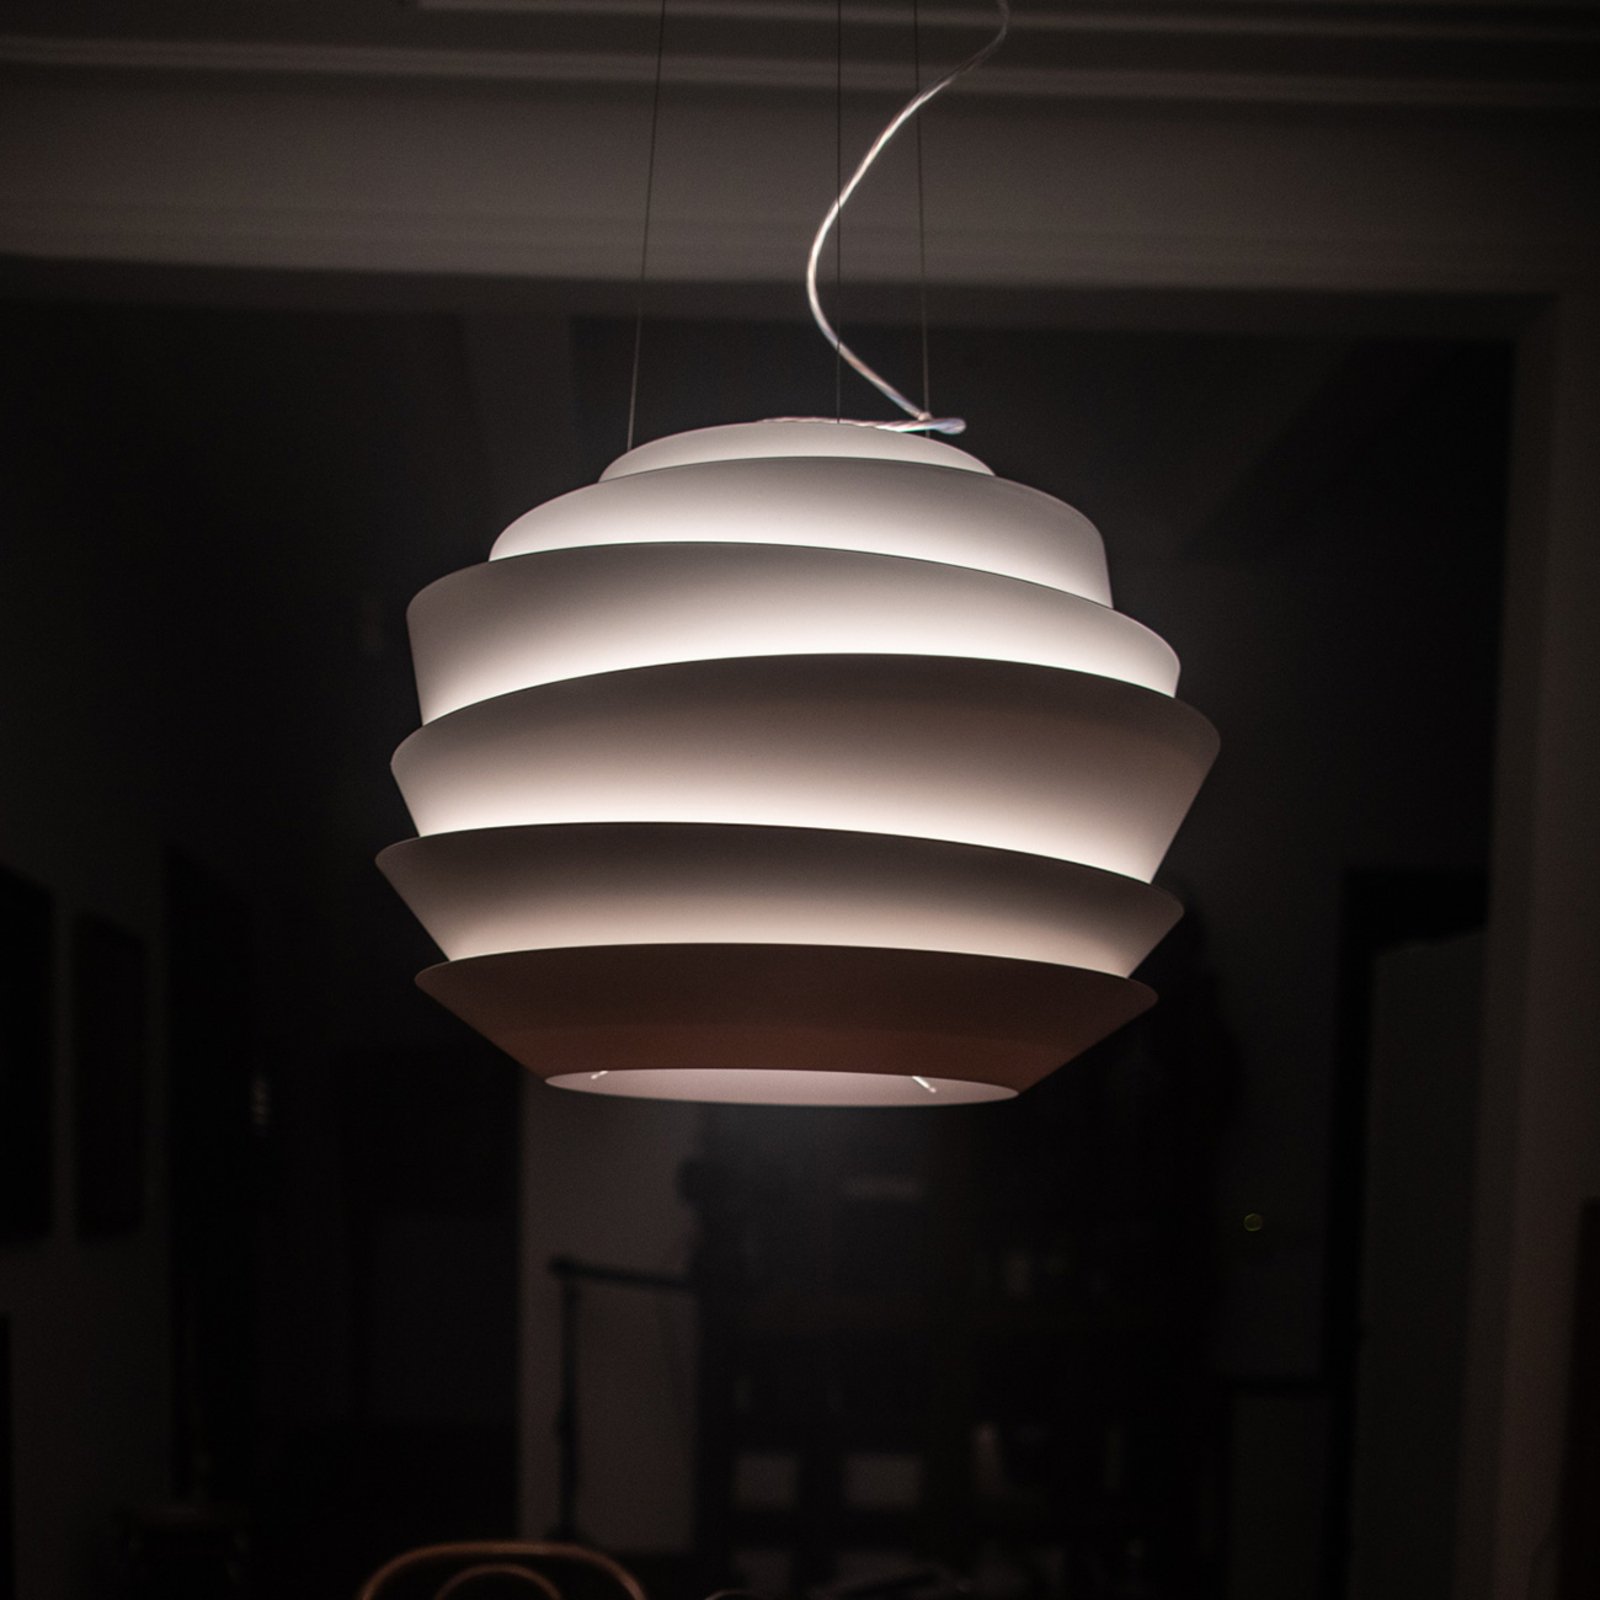 Foscarini Le Soleil sospensione LED, bianco